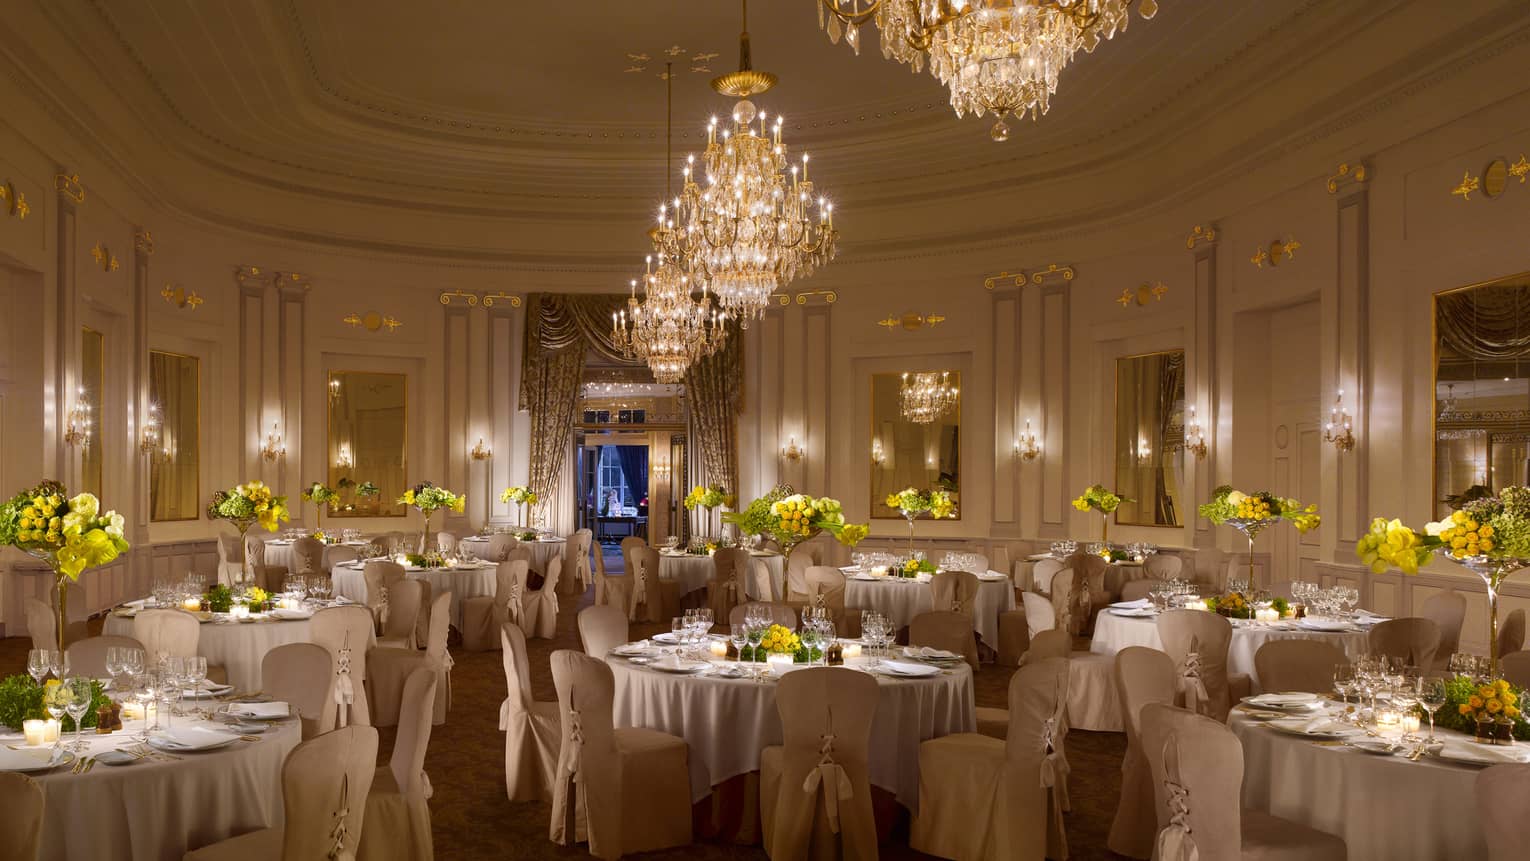 Salle des Nations elegant banquet set up under large crystal chandeliers 